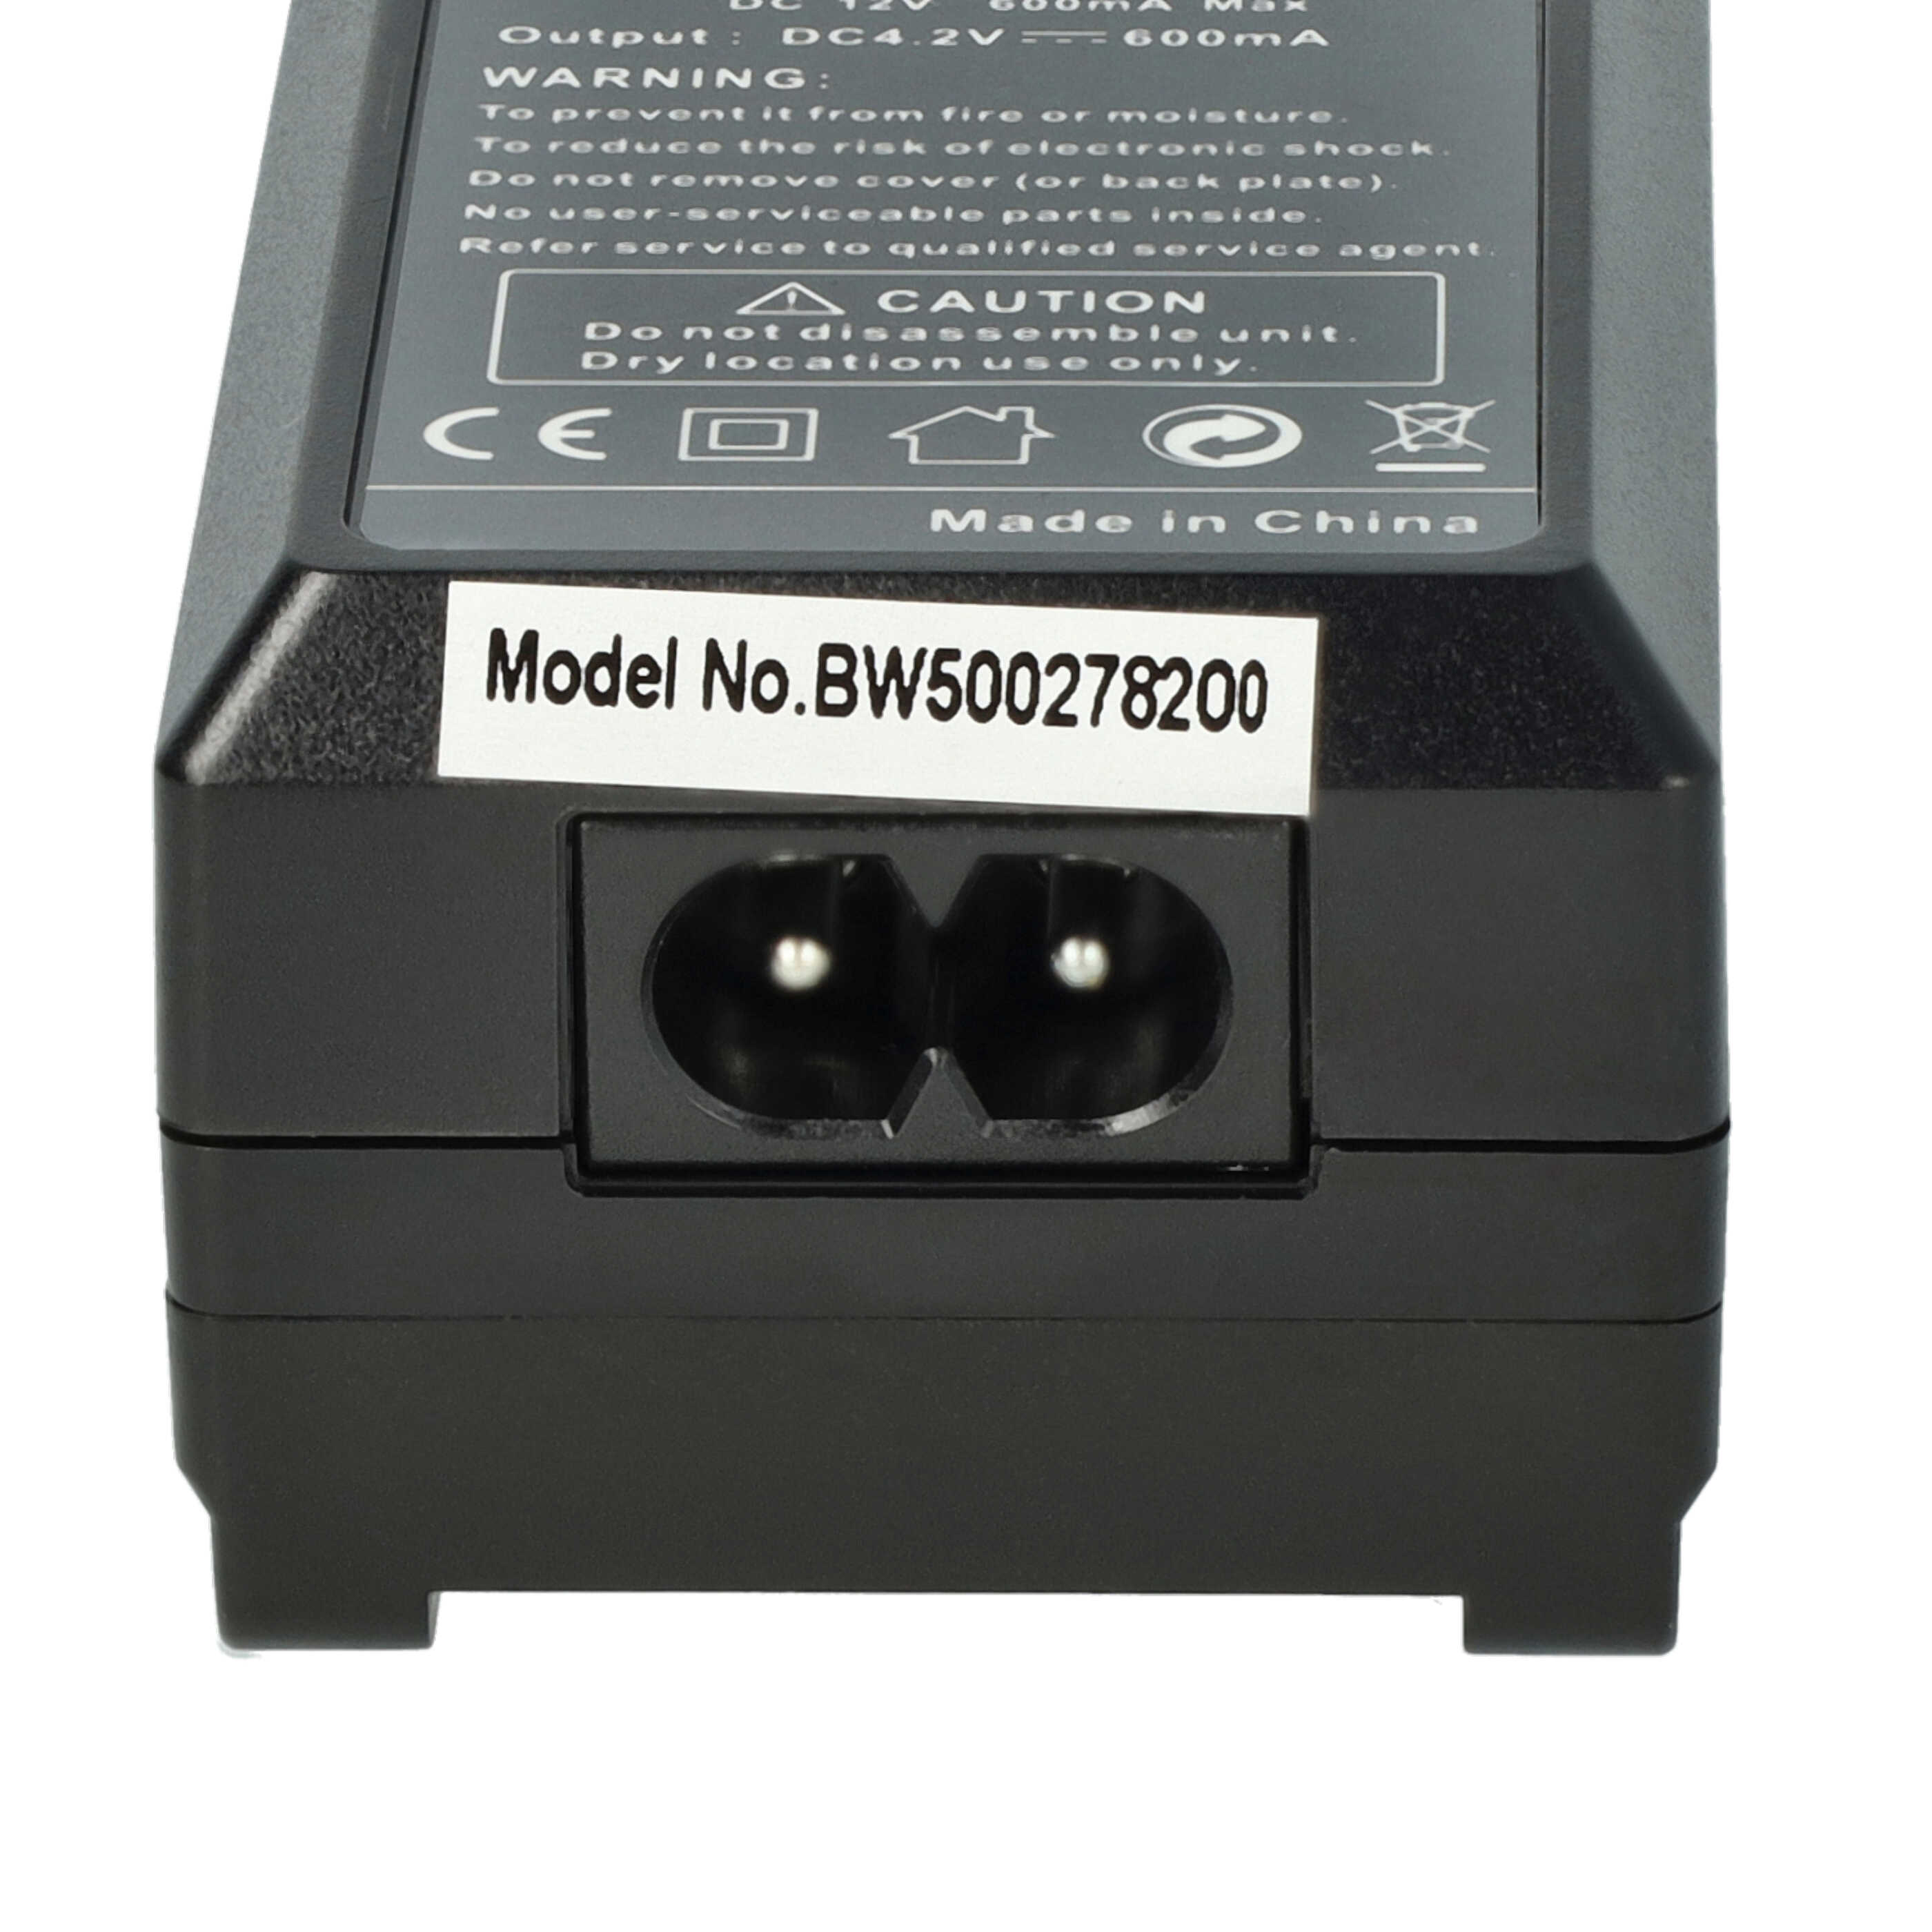 Caricabatterie + adattatore da auto per fotocamera Optio - 0,6A 4,2V 88,5cm